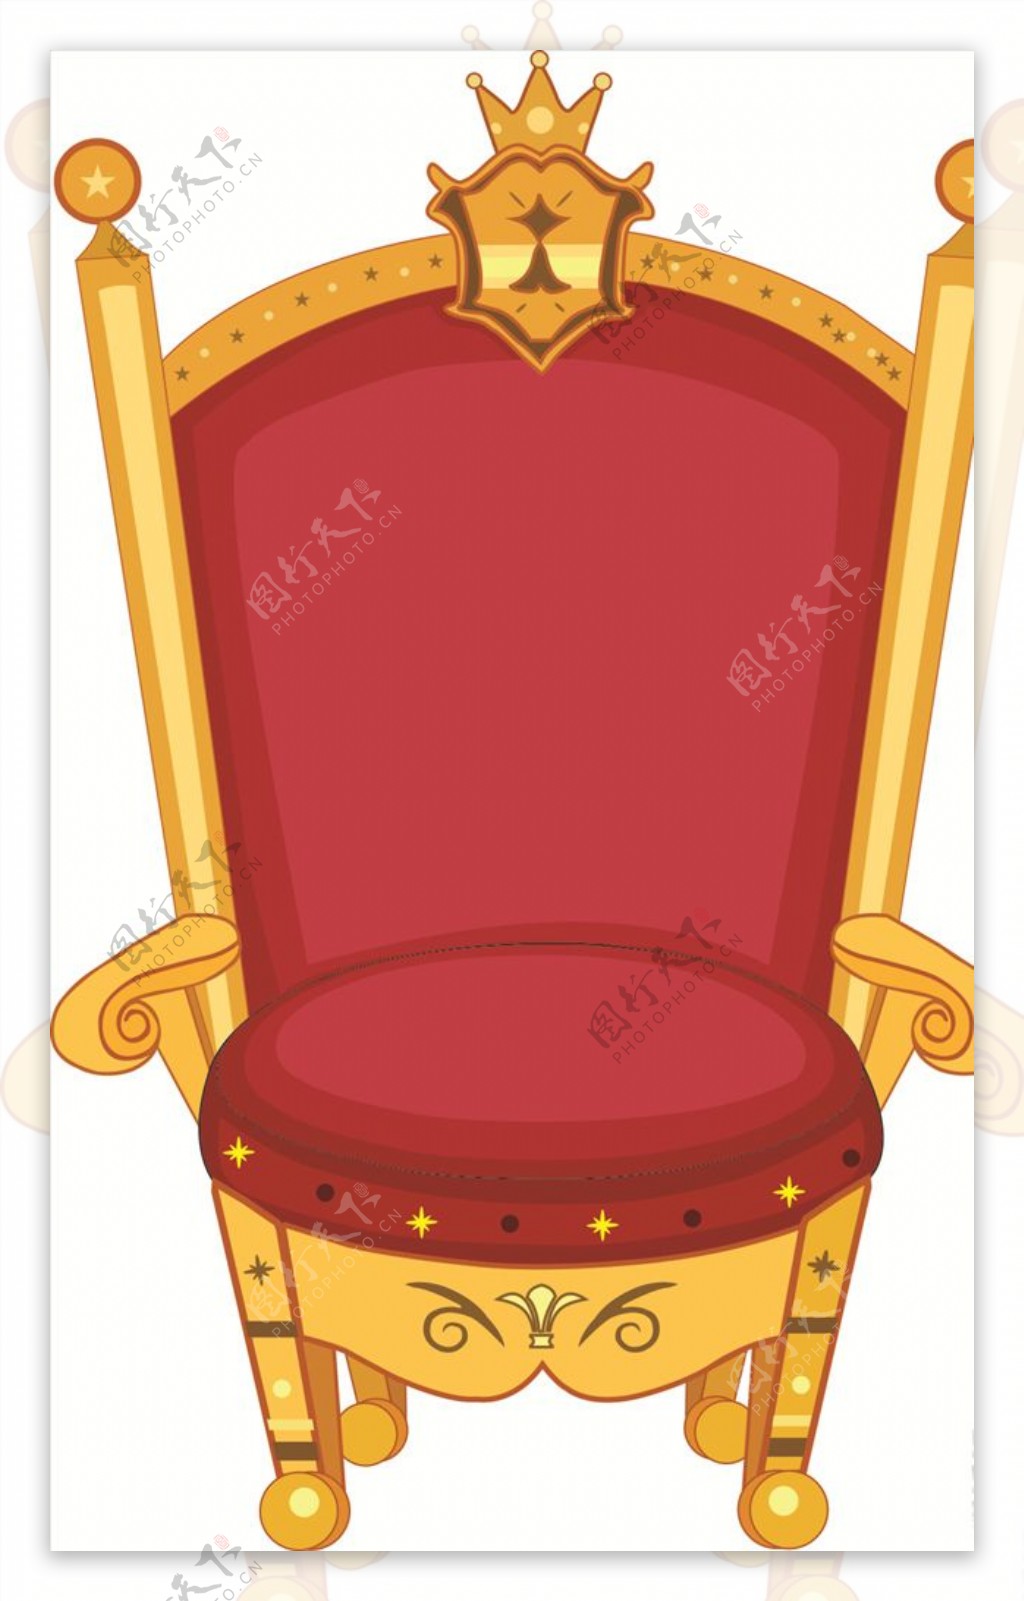 国王椅子卡通矢量